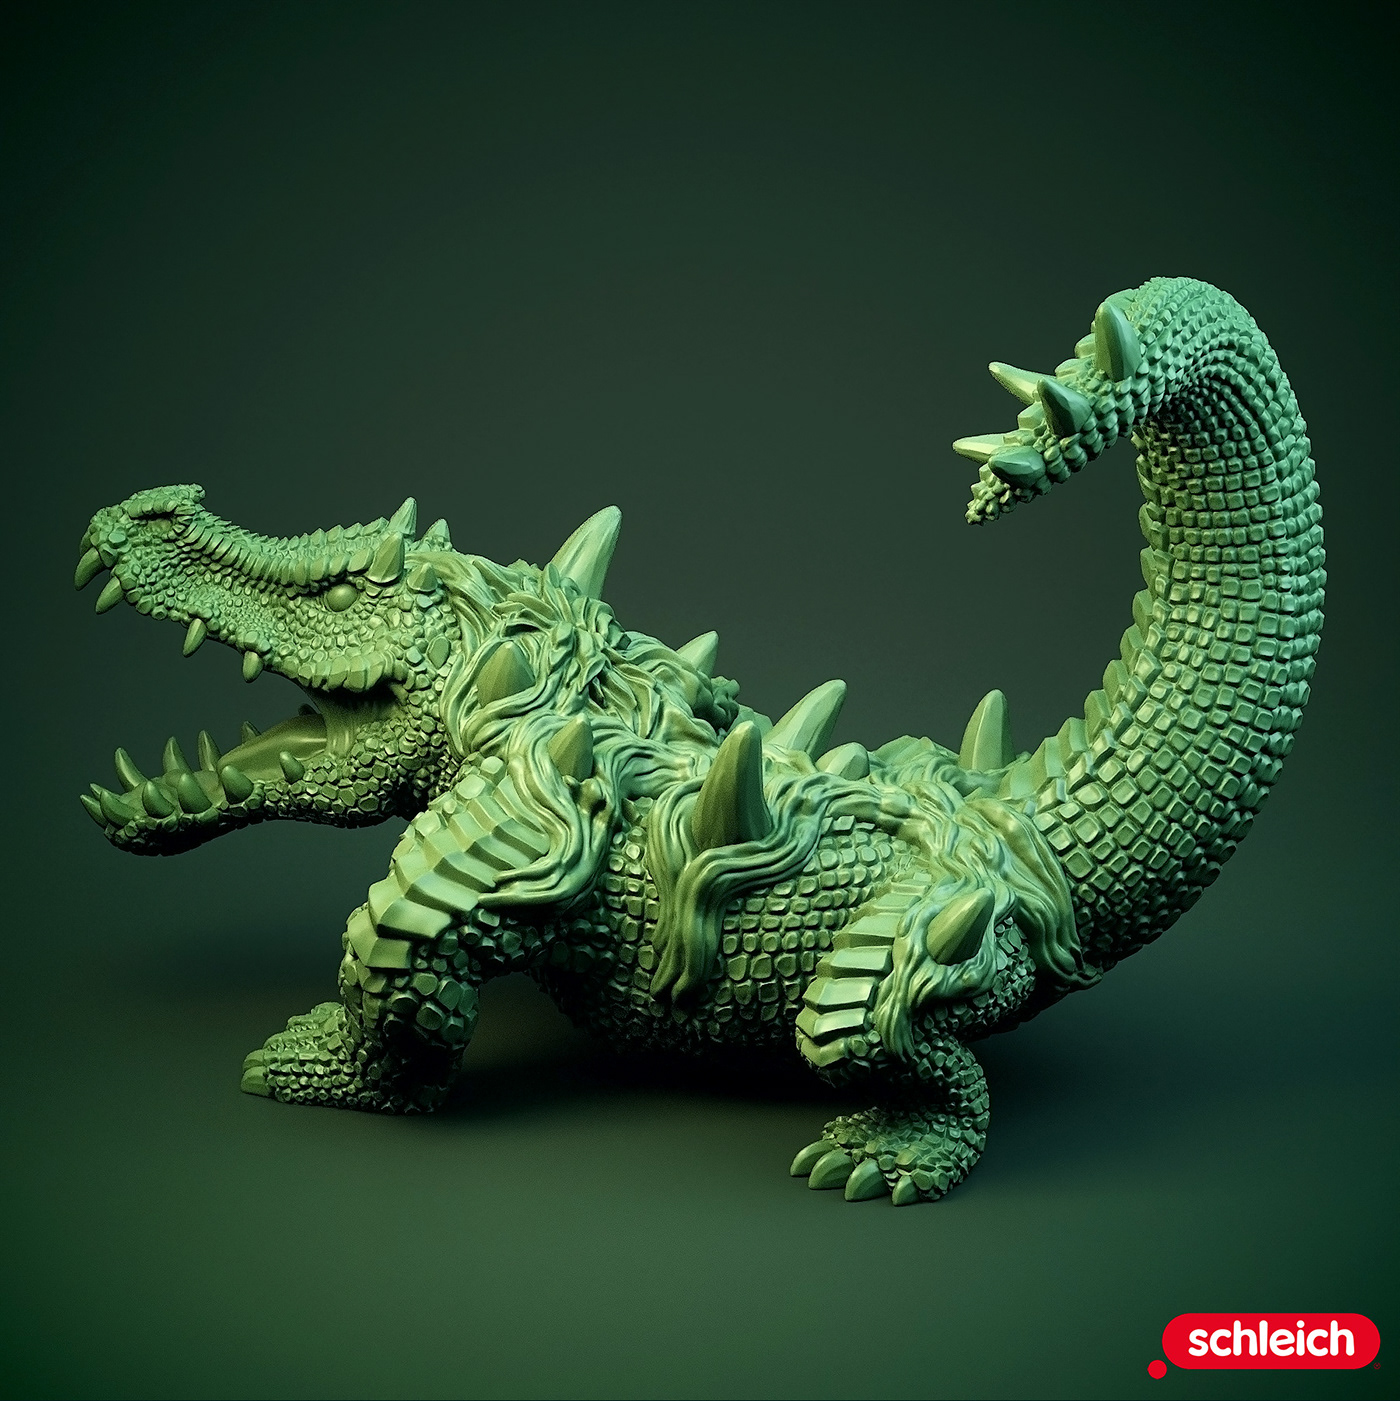 reptile toys toy design  sculpting  Zbrush conceptart animals creatures conceptualdesign creaturedesign